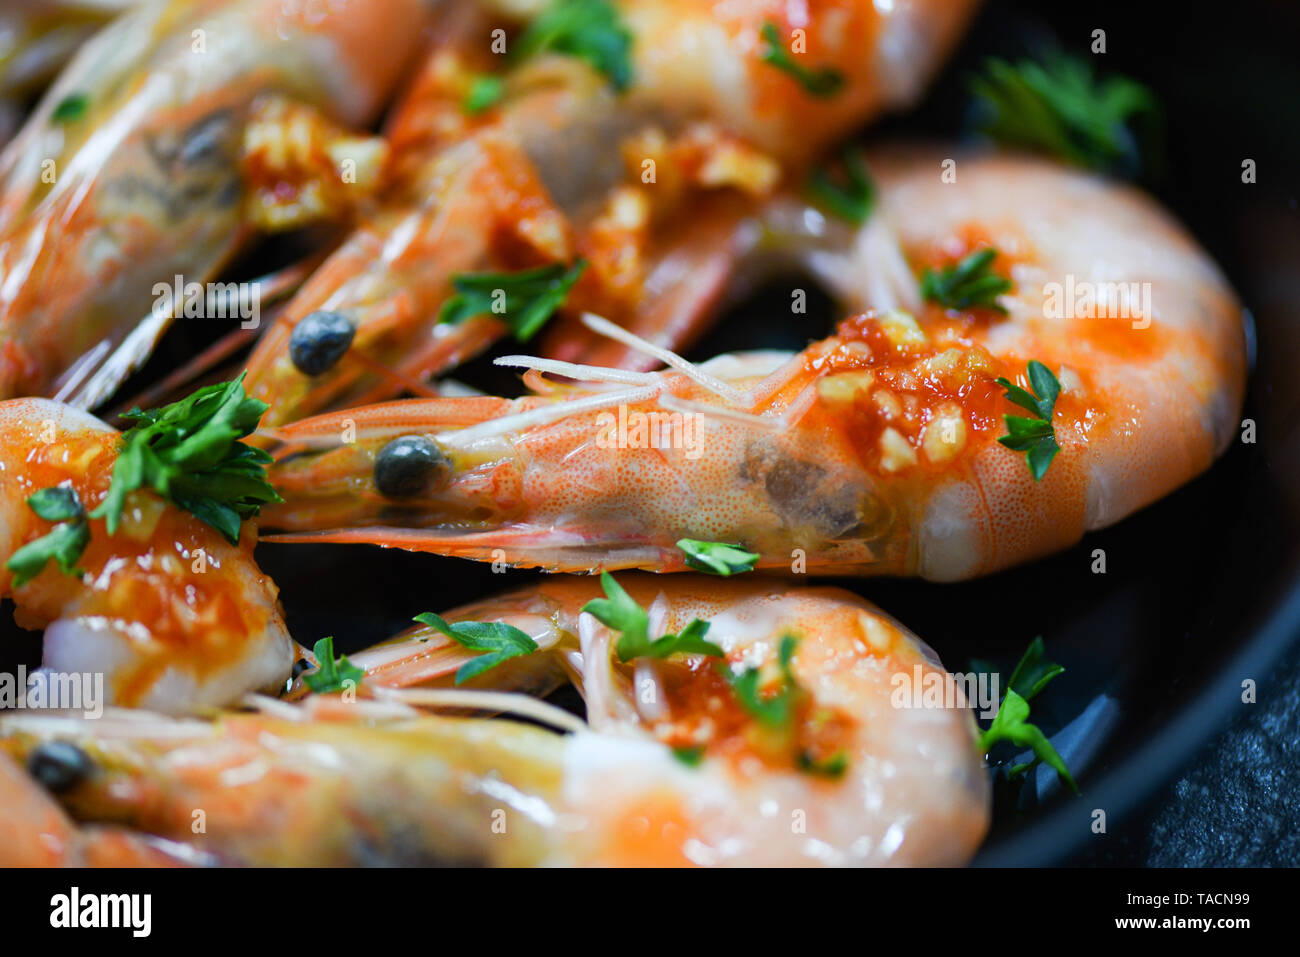 Fruits de mer crevettes Crevettes avec dîner gastronomique, fruits de mer cuits avec la sauce d'herbes et d'épices sur fond pan / Close up les crustacés crevettes cuites Banque D'Images